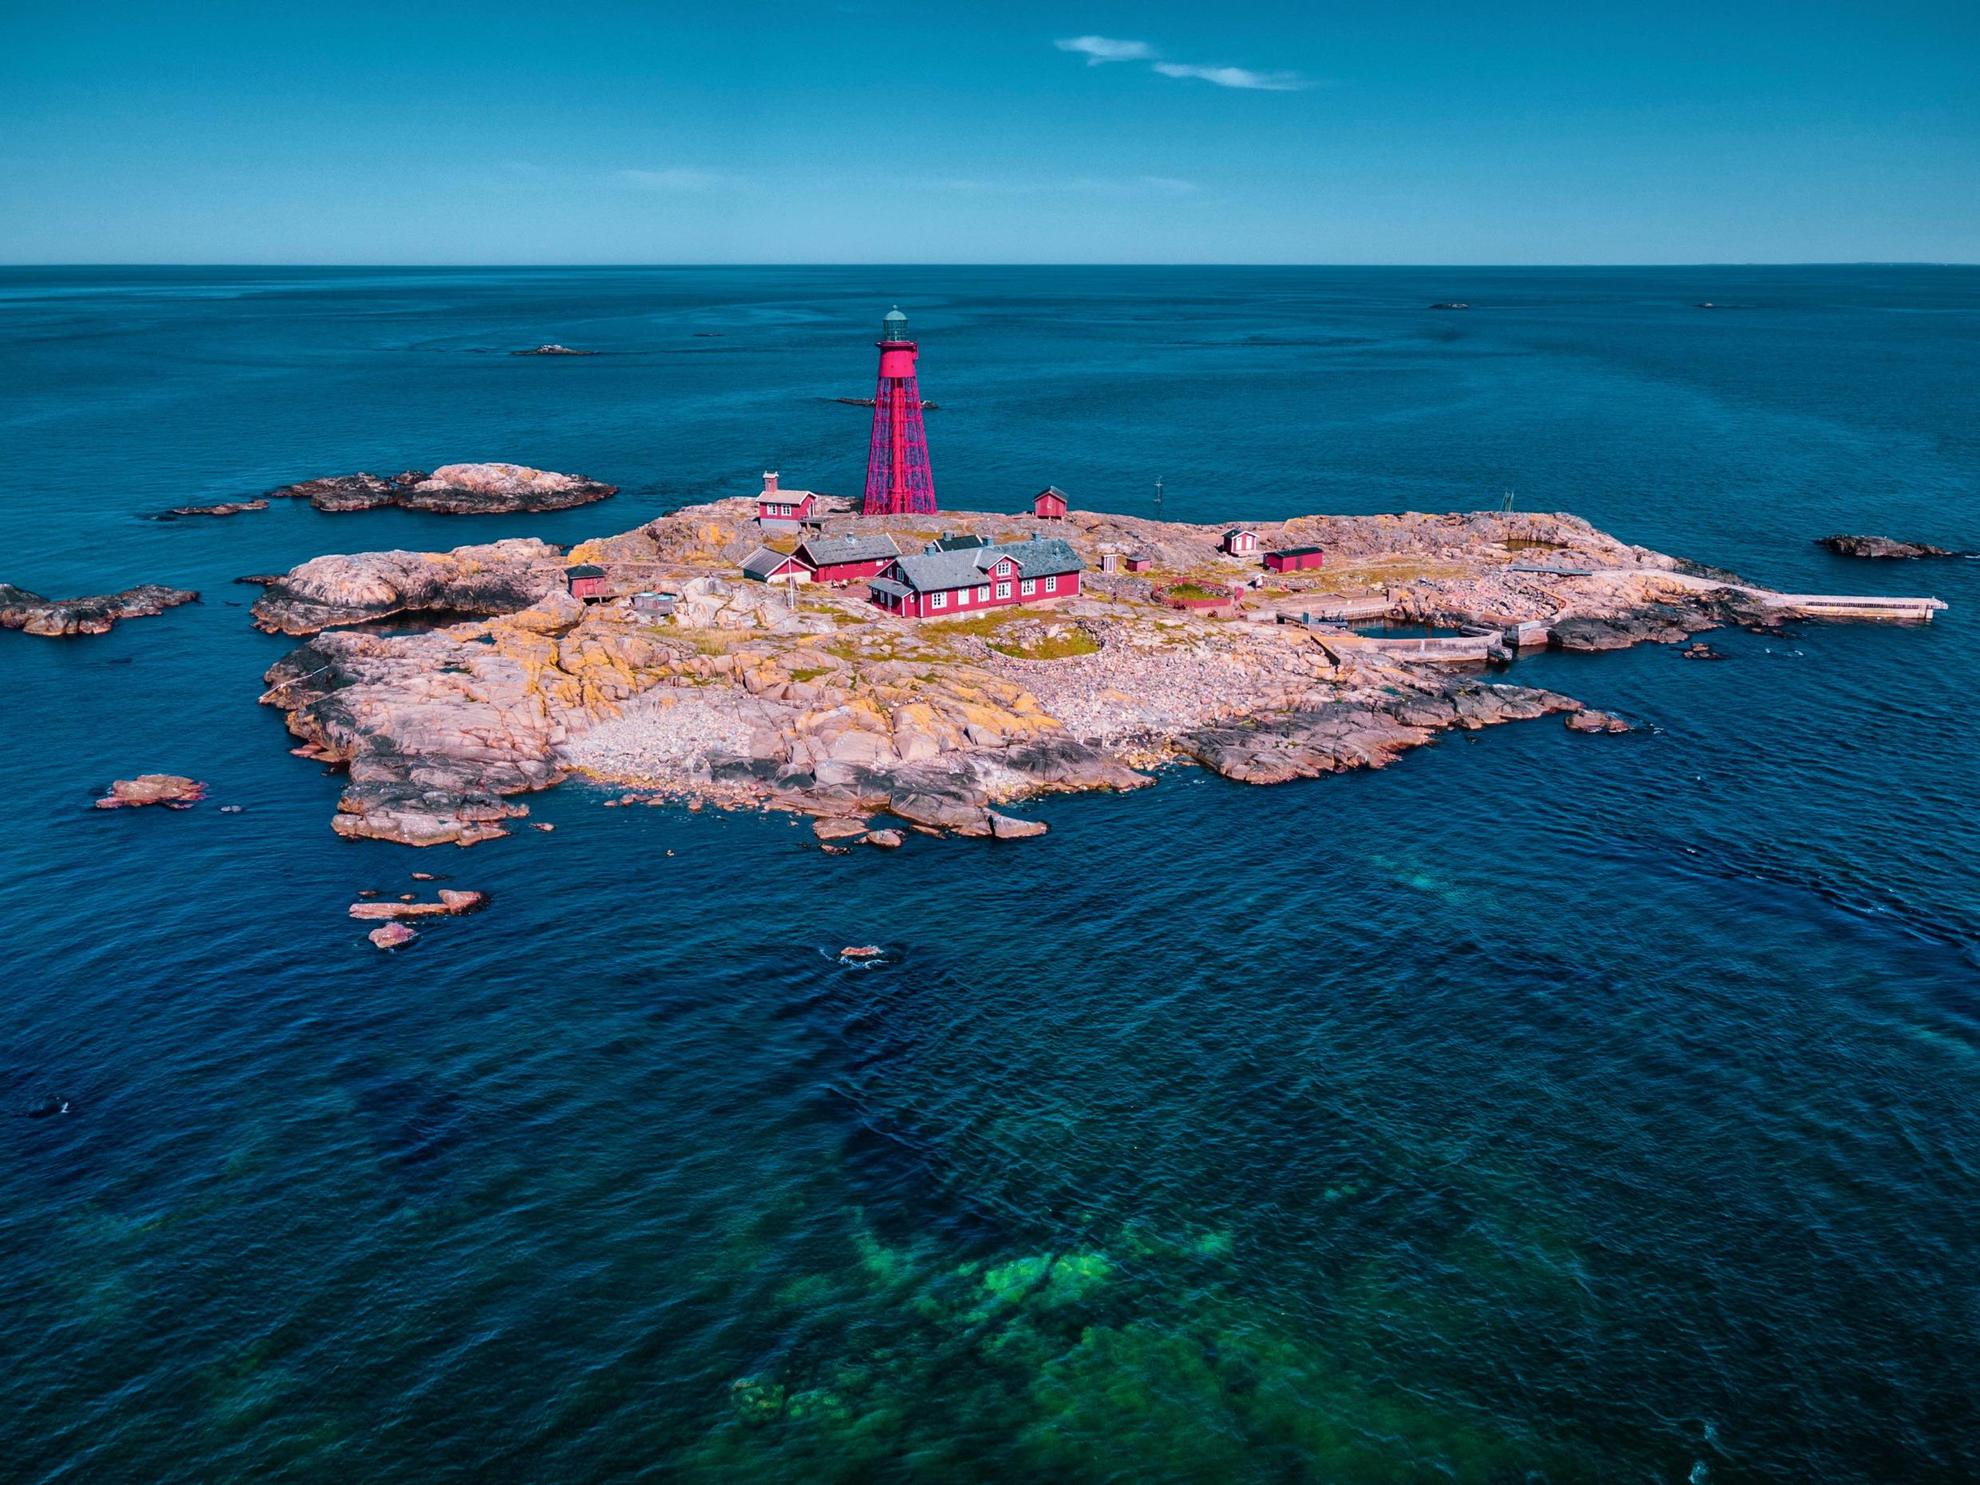 Vue aérienne de maisons et d'un phare sur une petite île de l'archipel.